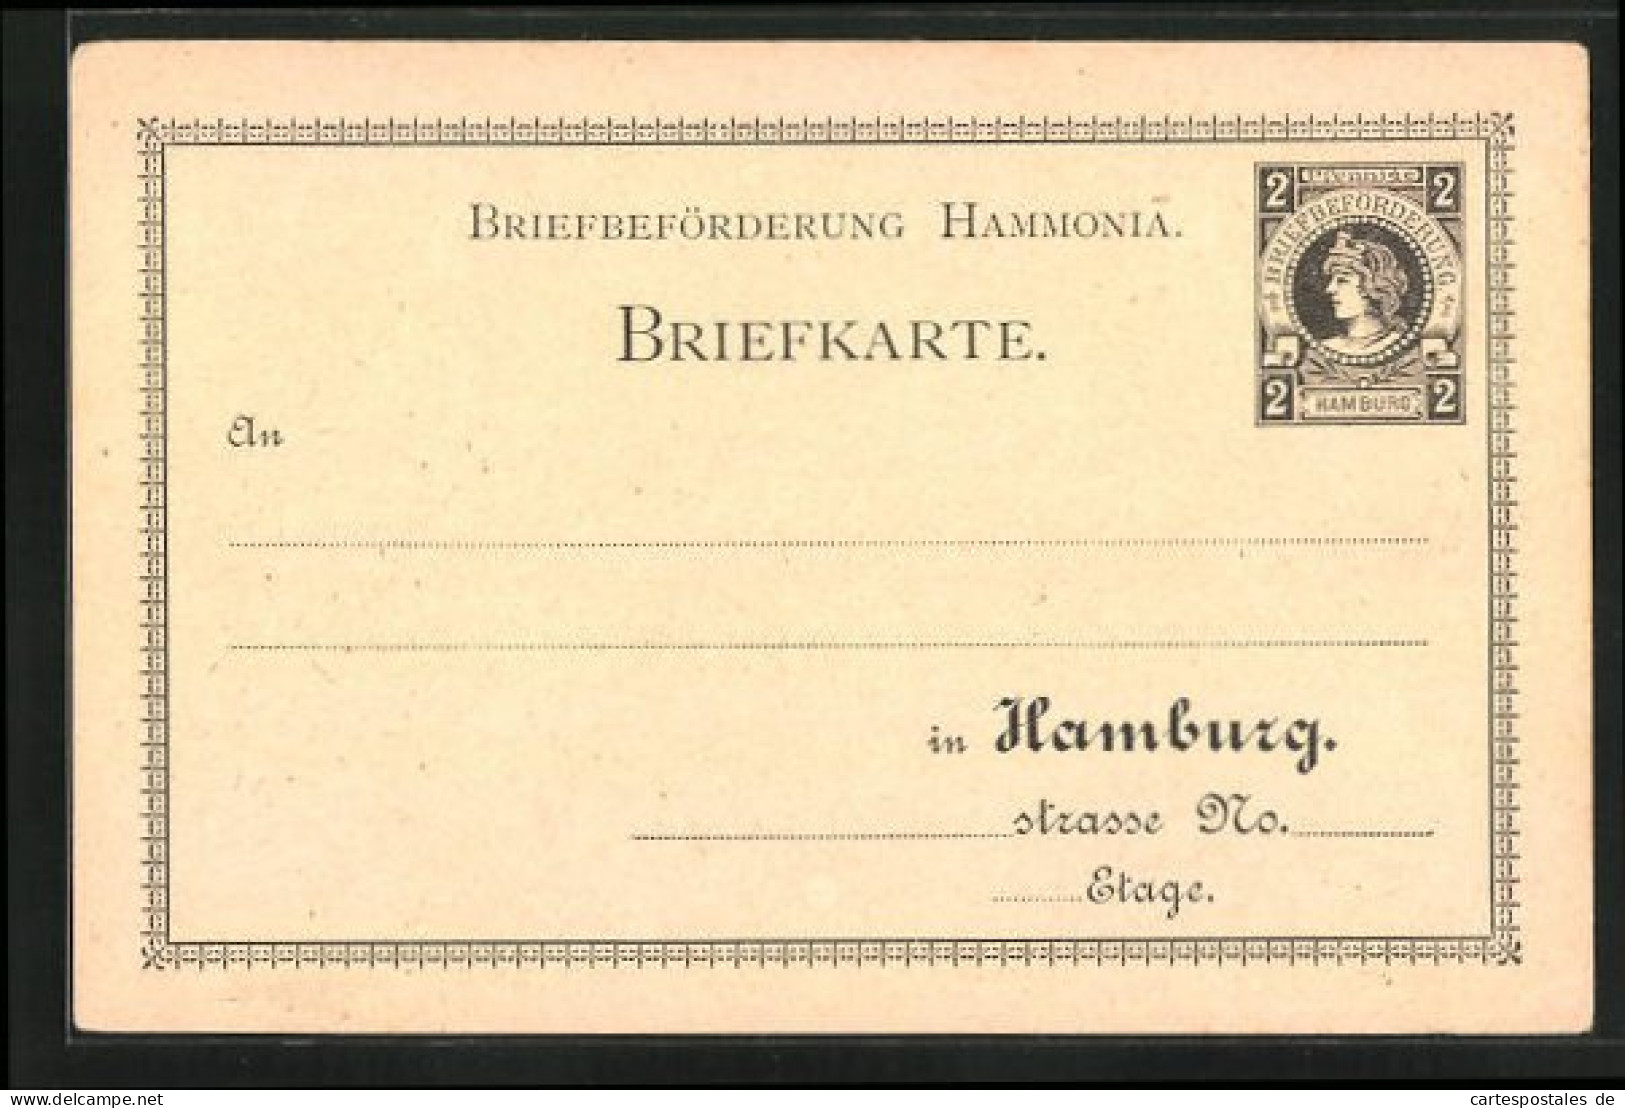 AK Briefkarte Private Stadtpost Hamburg, Briefbeförderung Hammonia, 2 Pfg.  - Stamps (pictures)